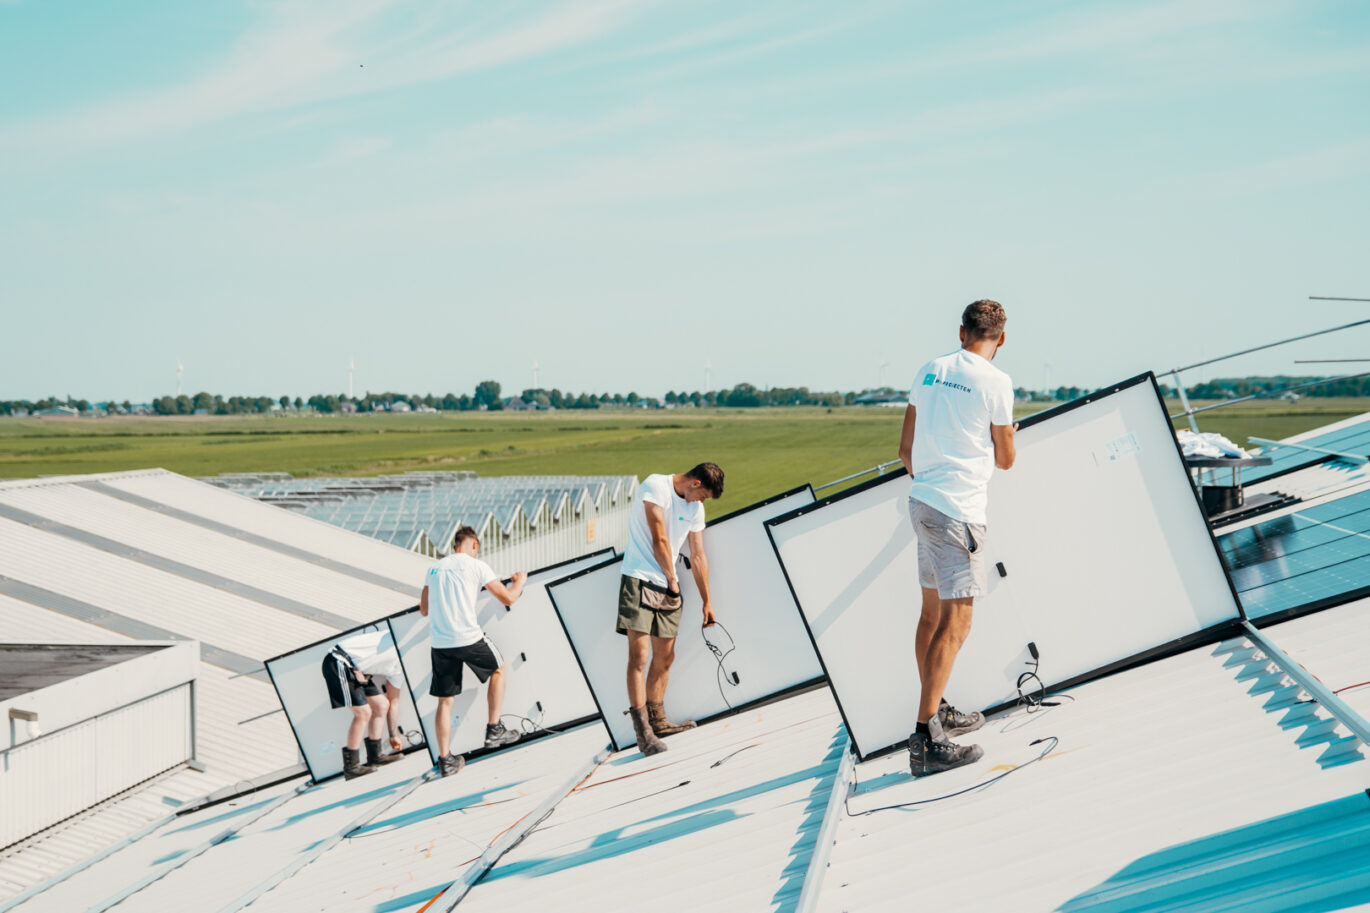 zakelijke zonnepaneleninstallatie die wordt gerealiseerd door PV-Projecten